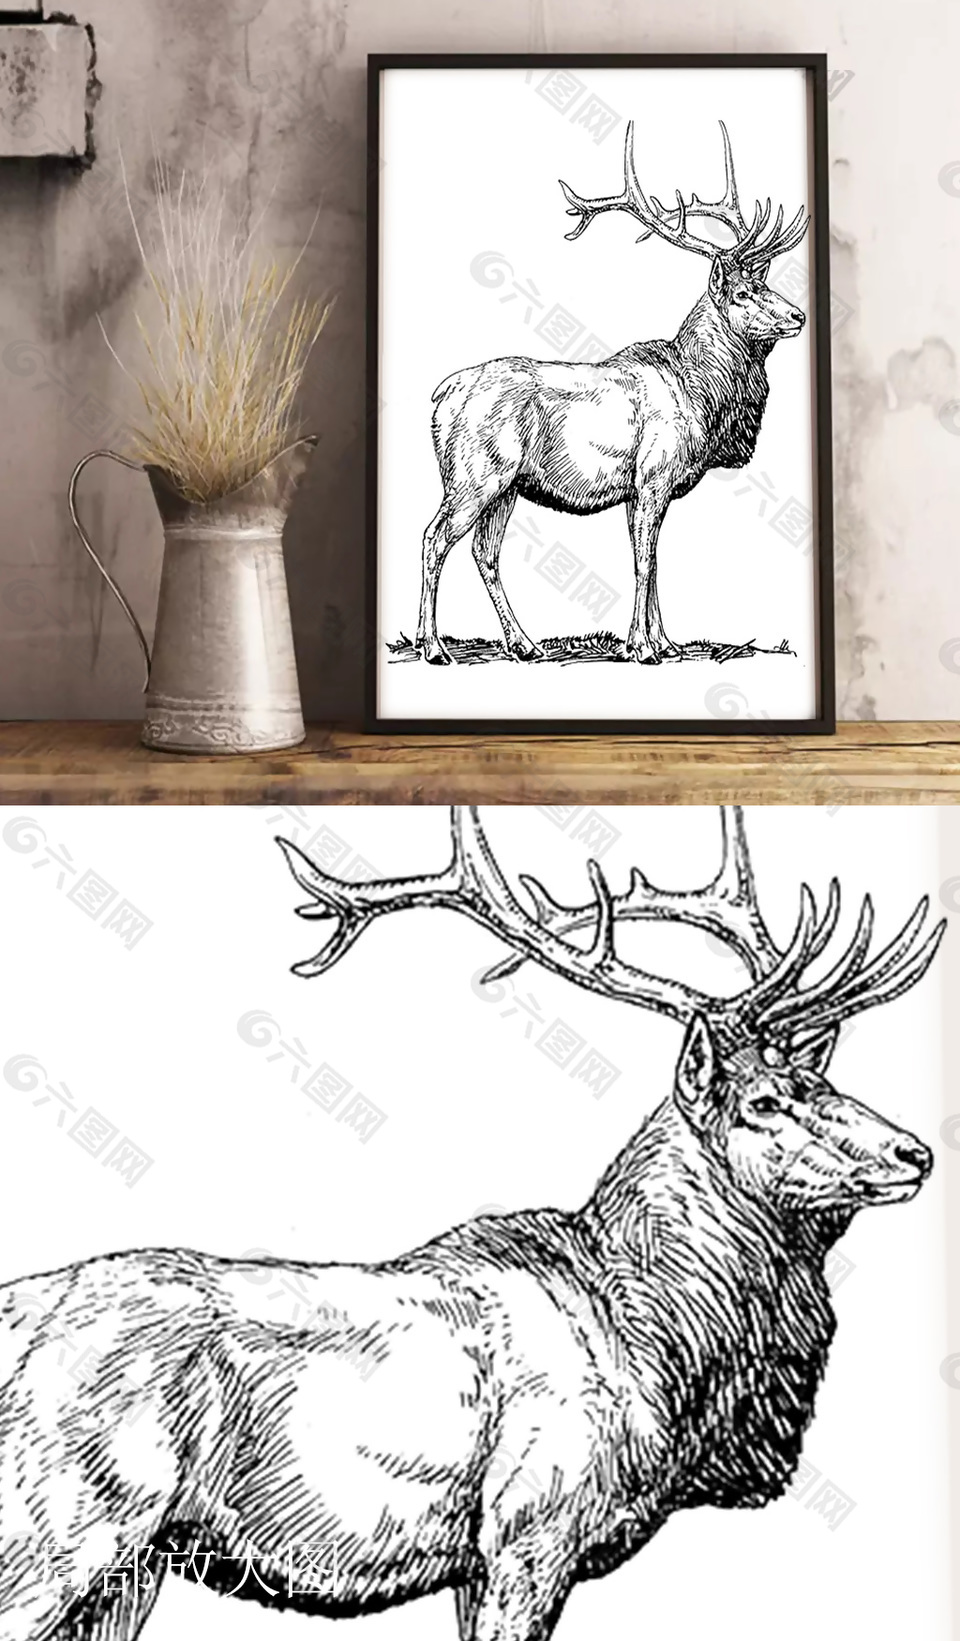 黑白线描麋鹿装饰画